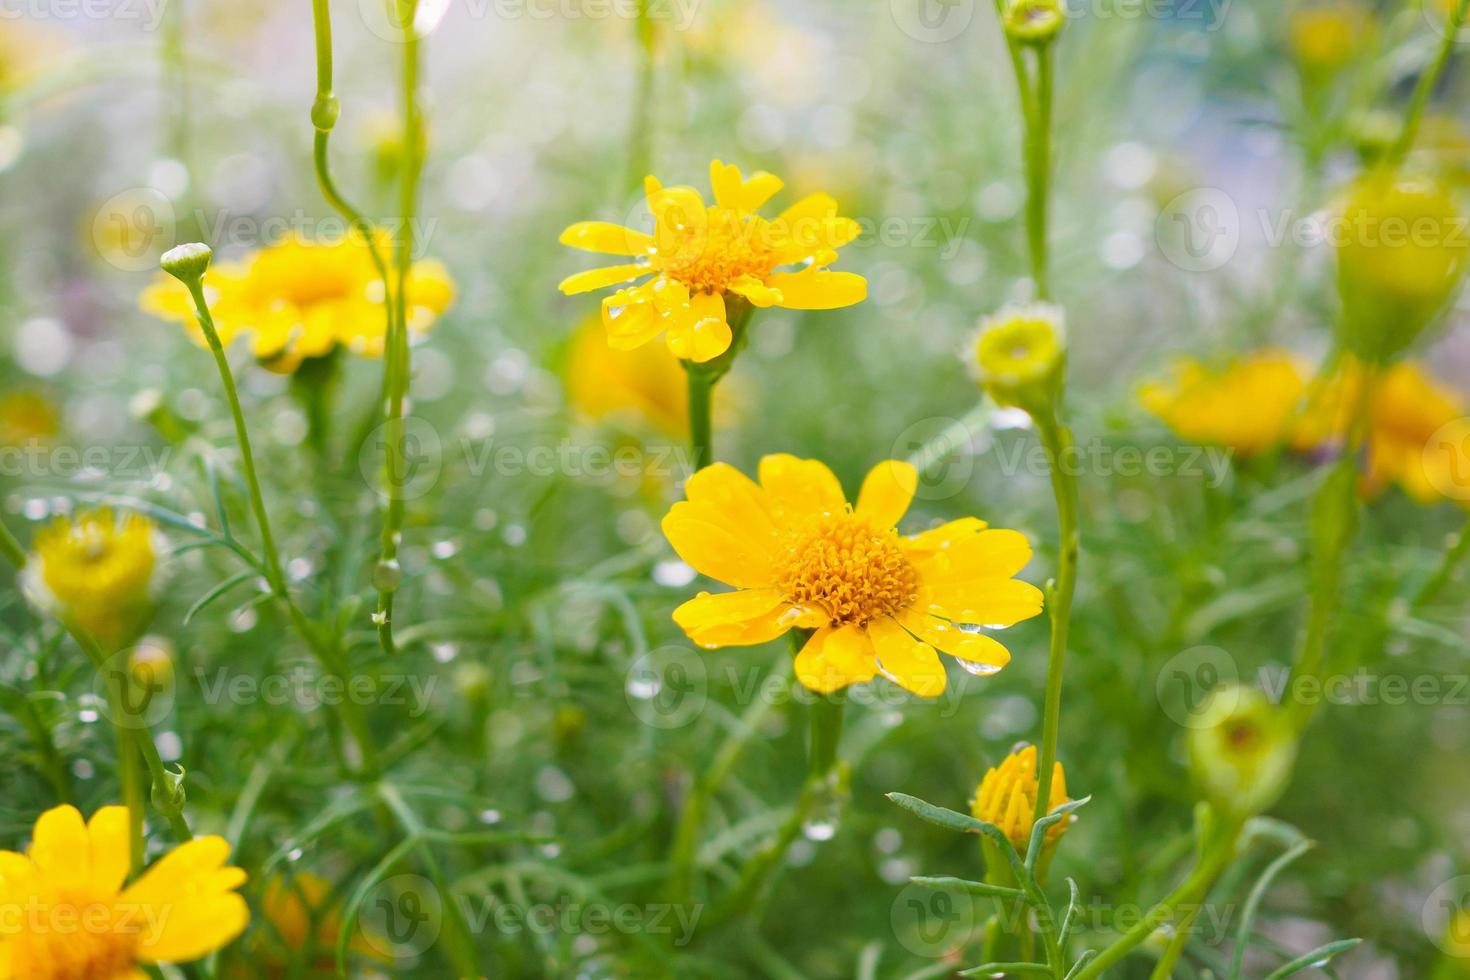 hermosas flores de margarita en un prado verde con gotas de agua foto